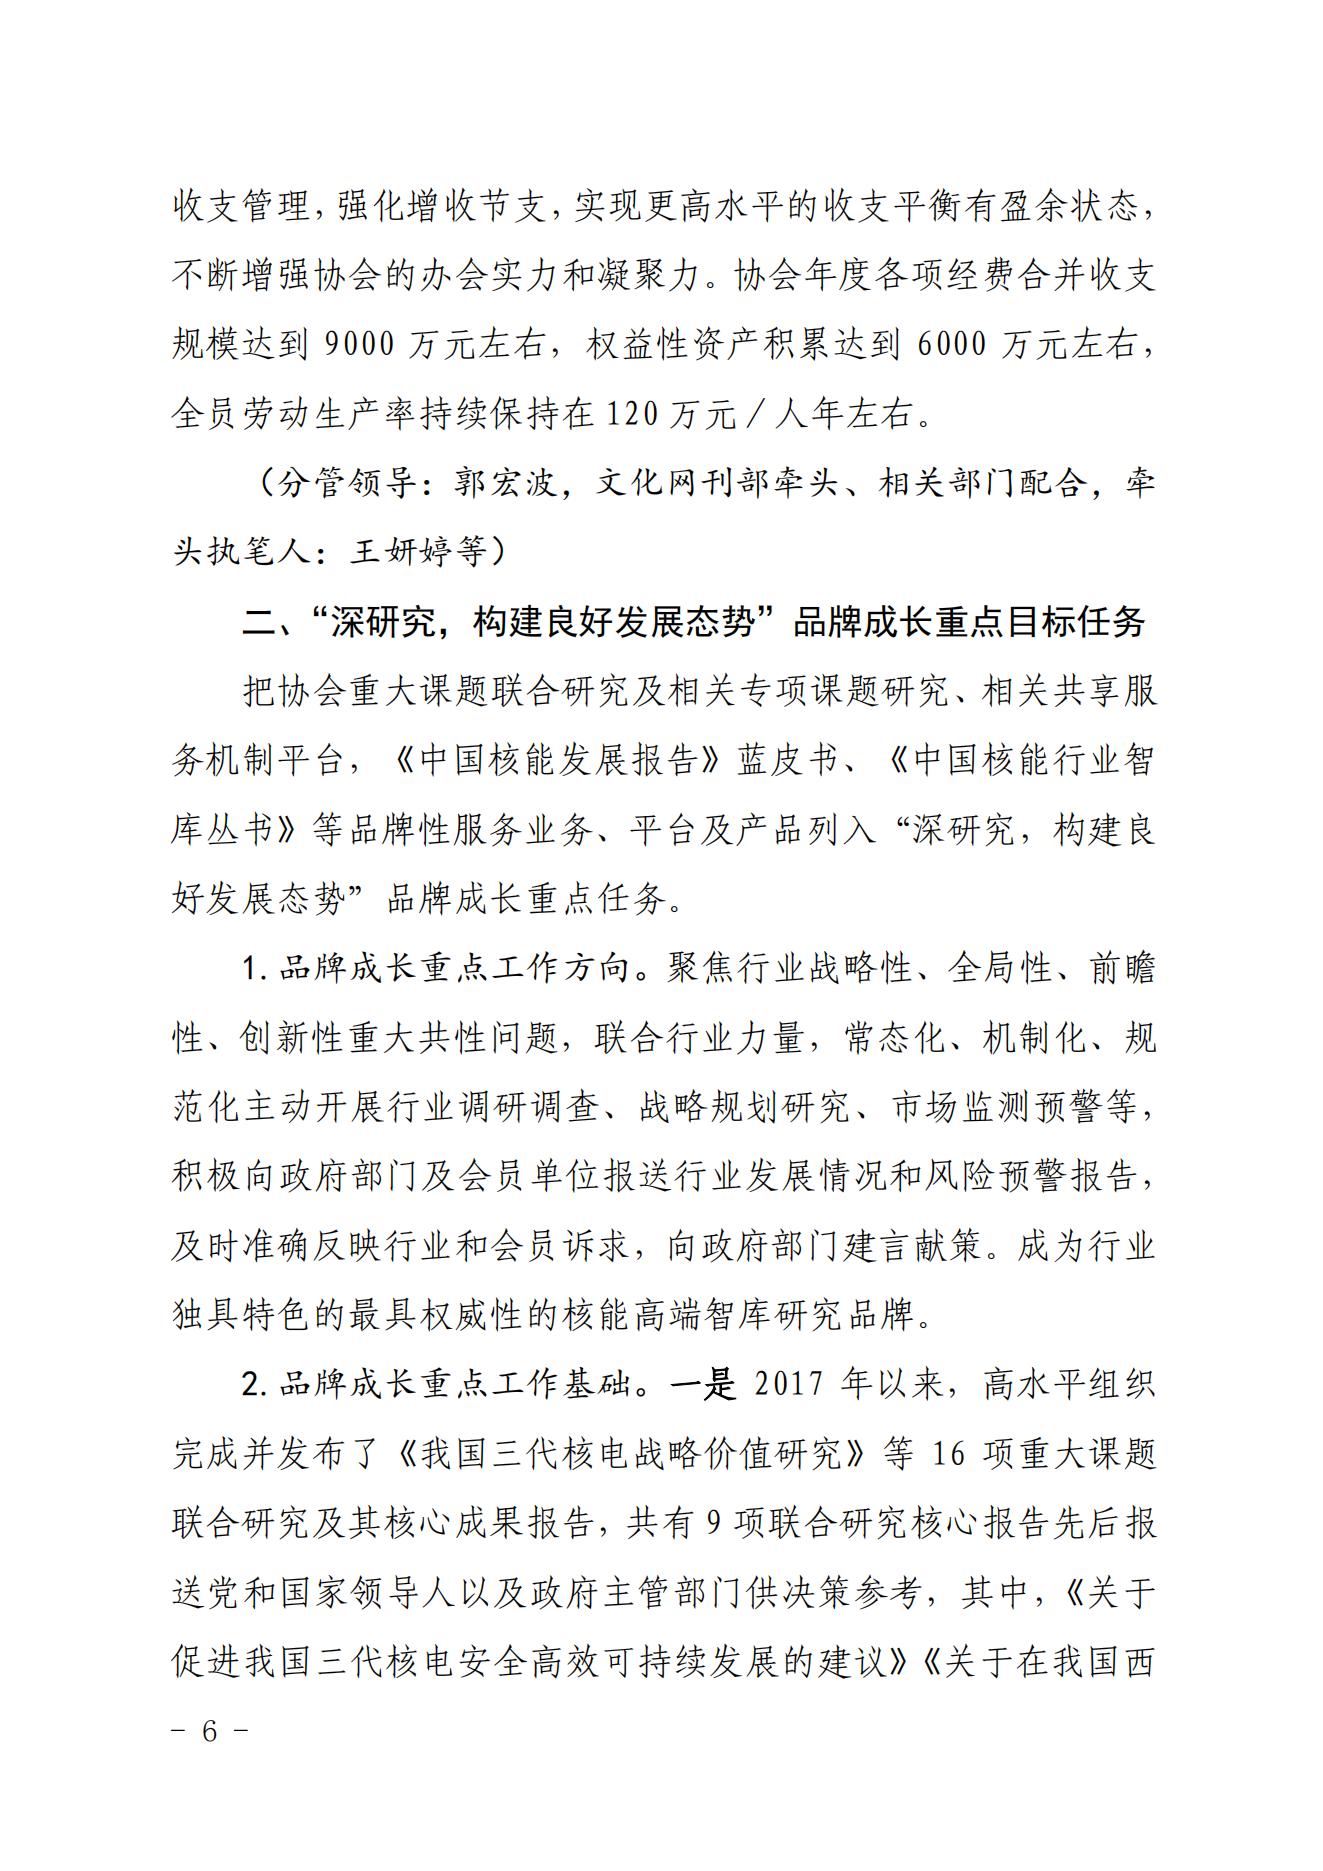 关于印发《中国核能行业协会“品牌协会成长计划”实施方案》的通知_05.jpg